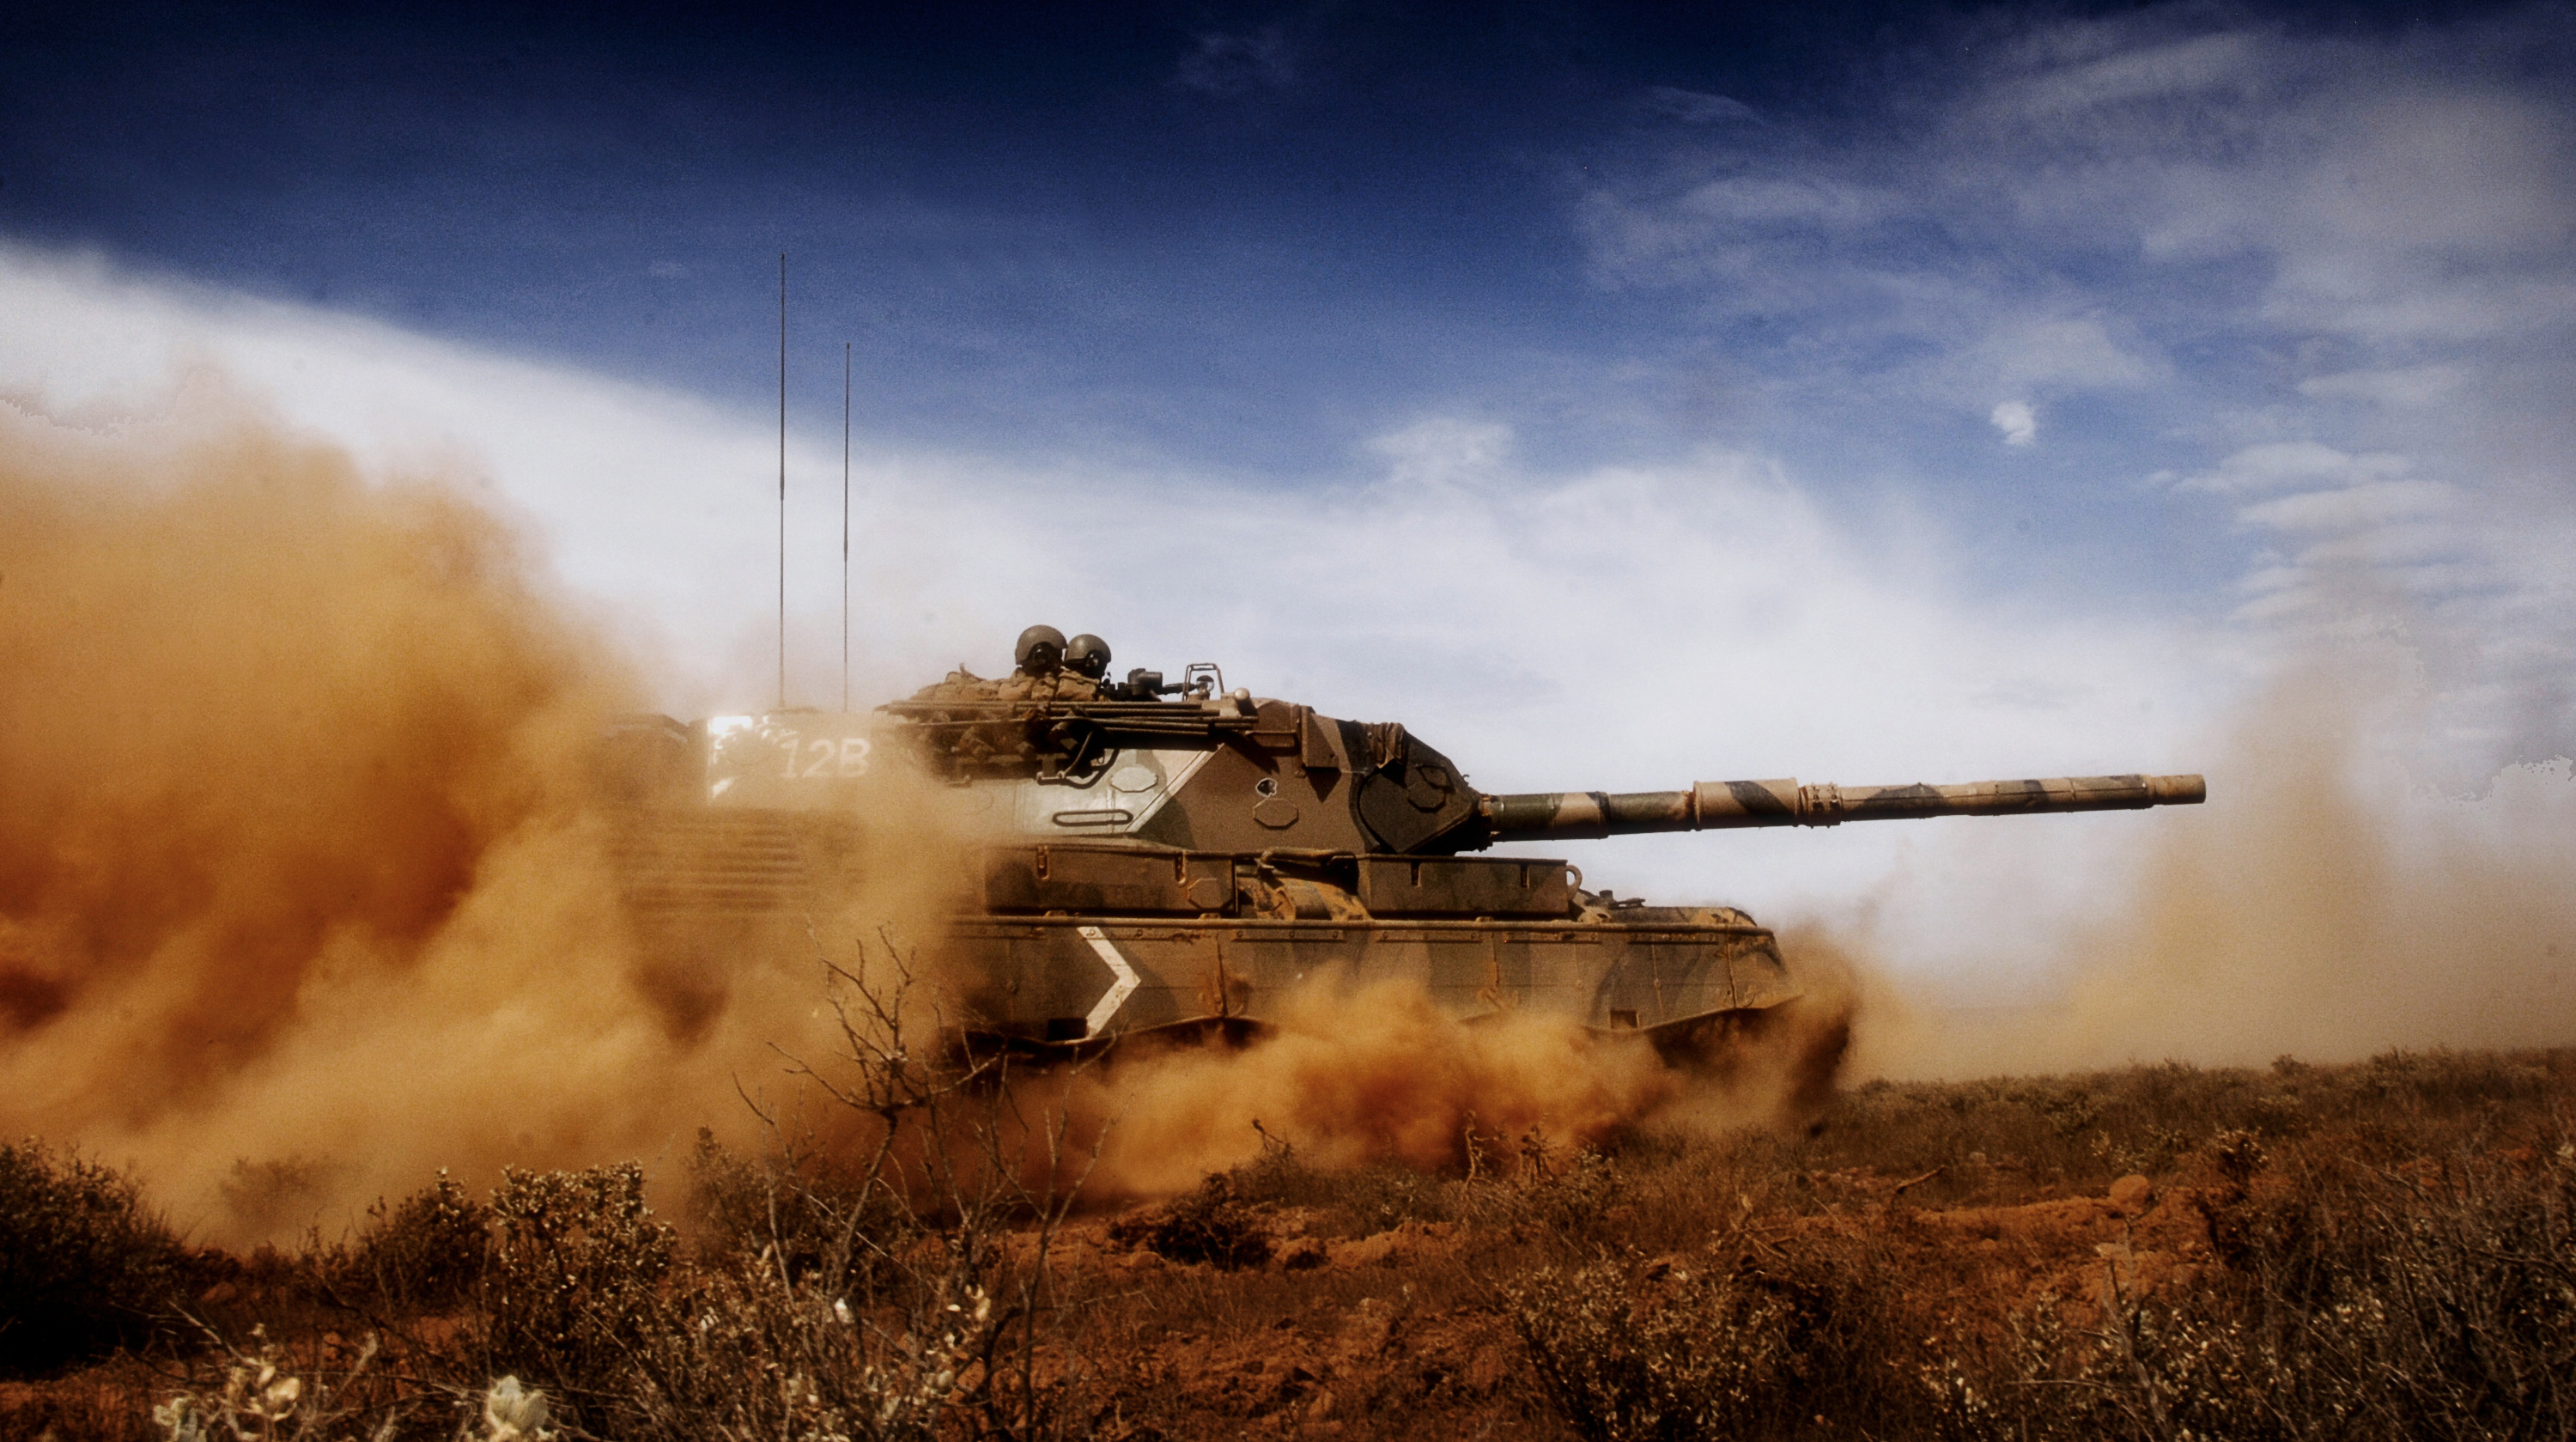 Бесплатное фото Американский танк едет по песку